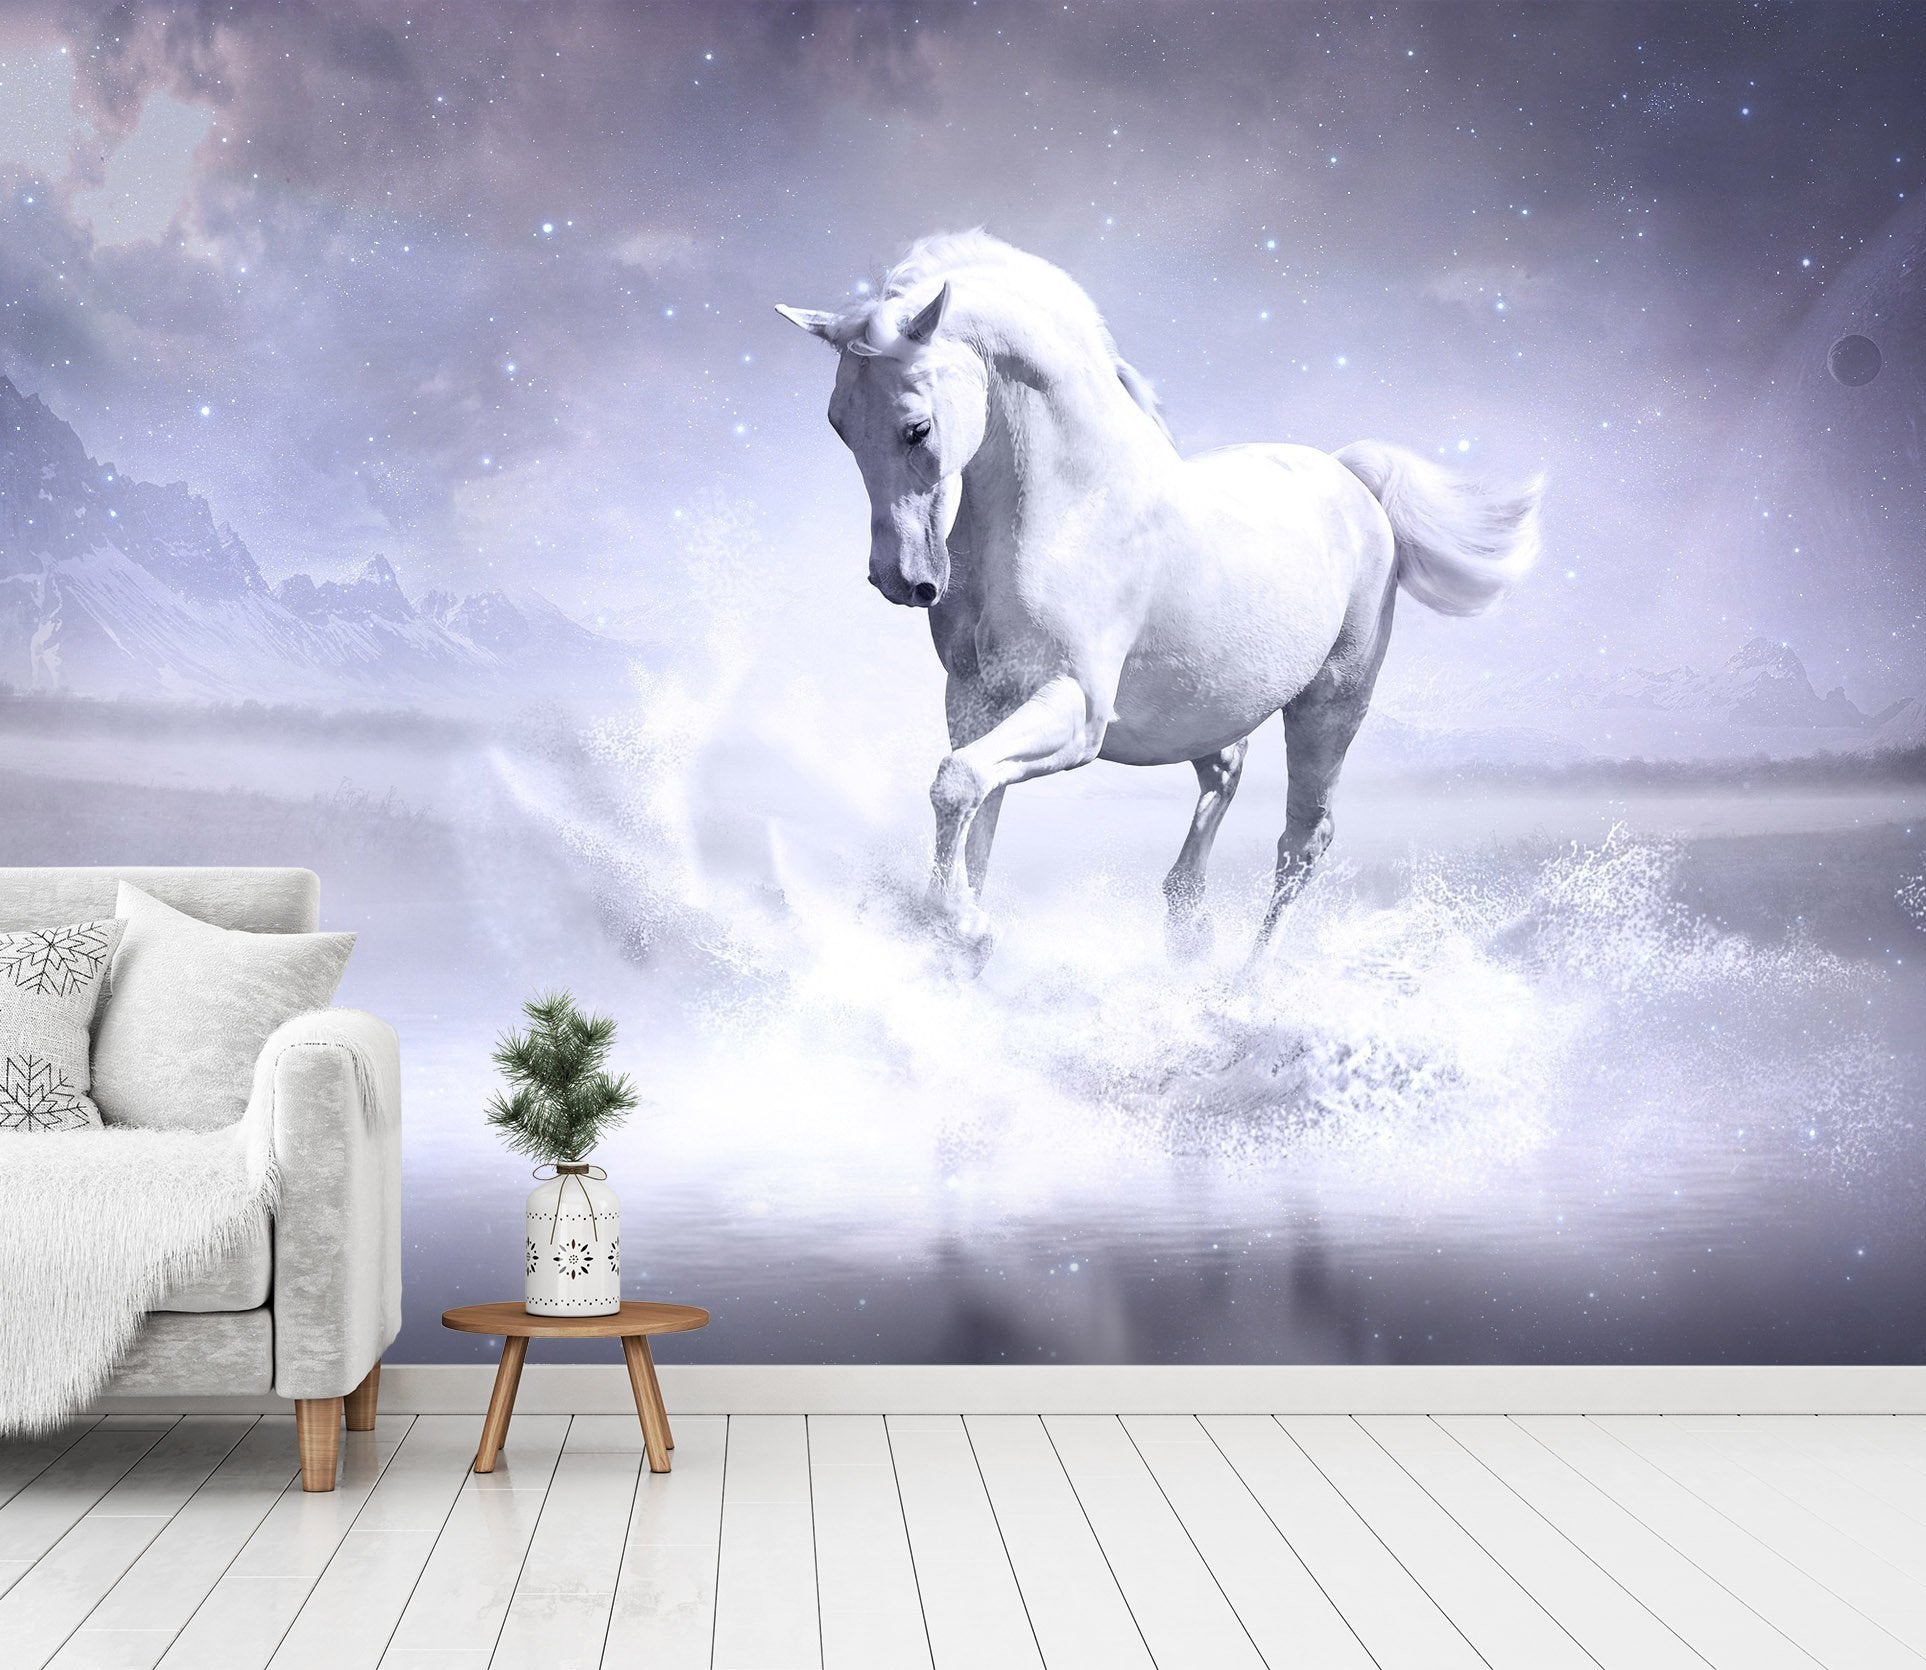 3D Handsome Horse 113 Wallpaper AJ Wallpaper 